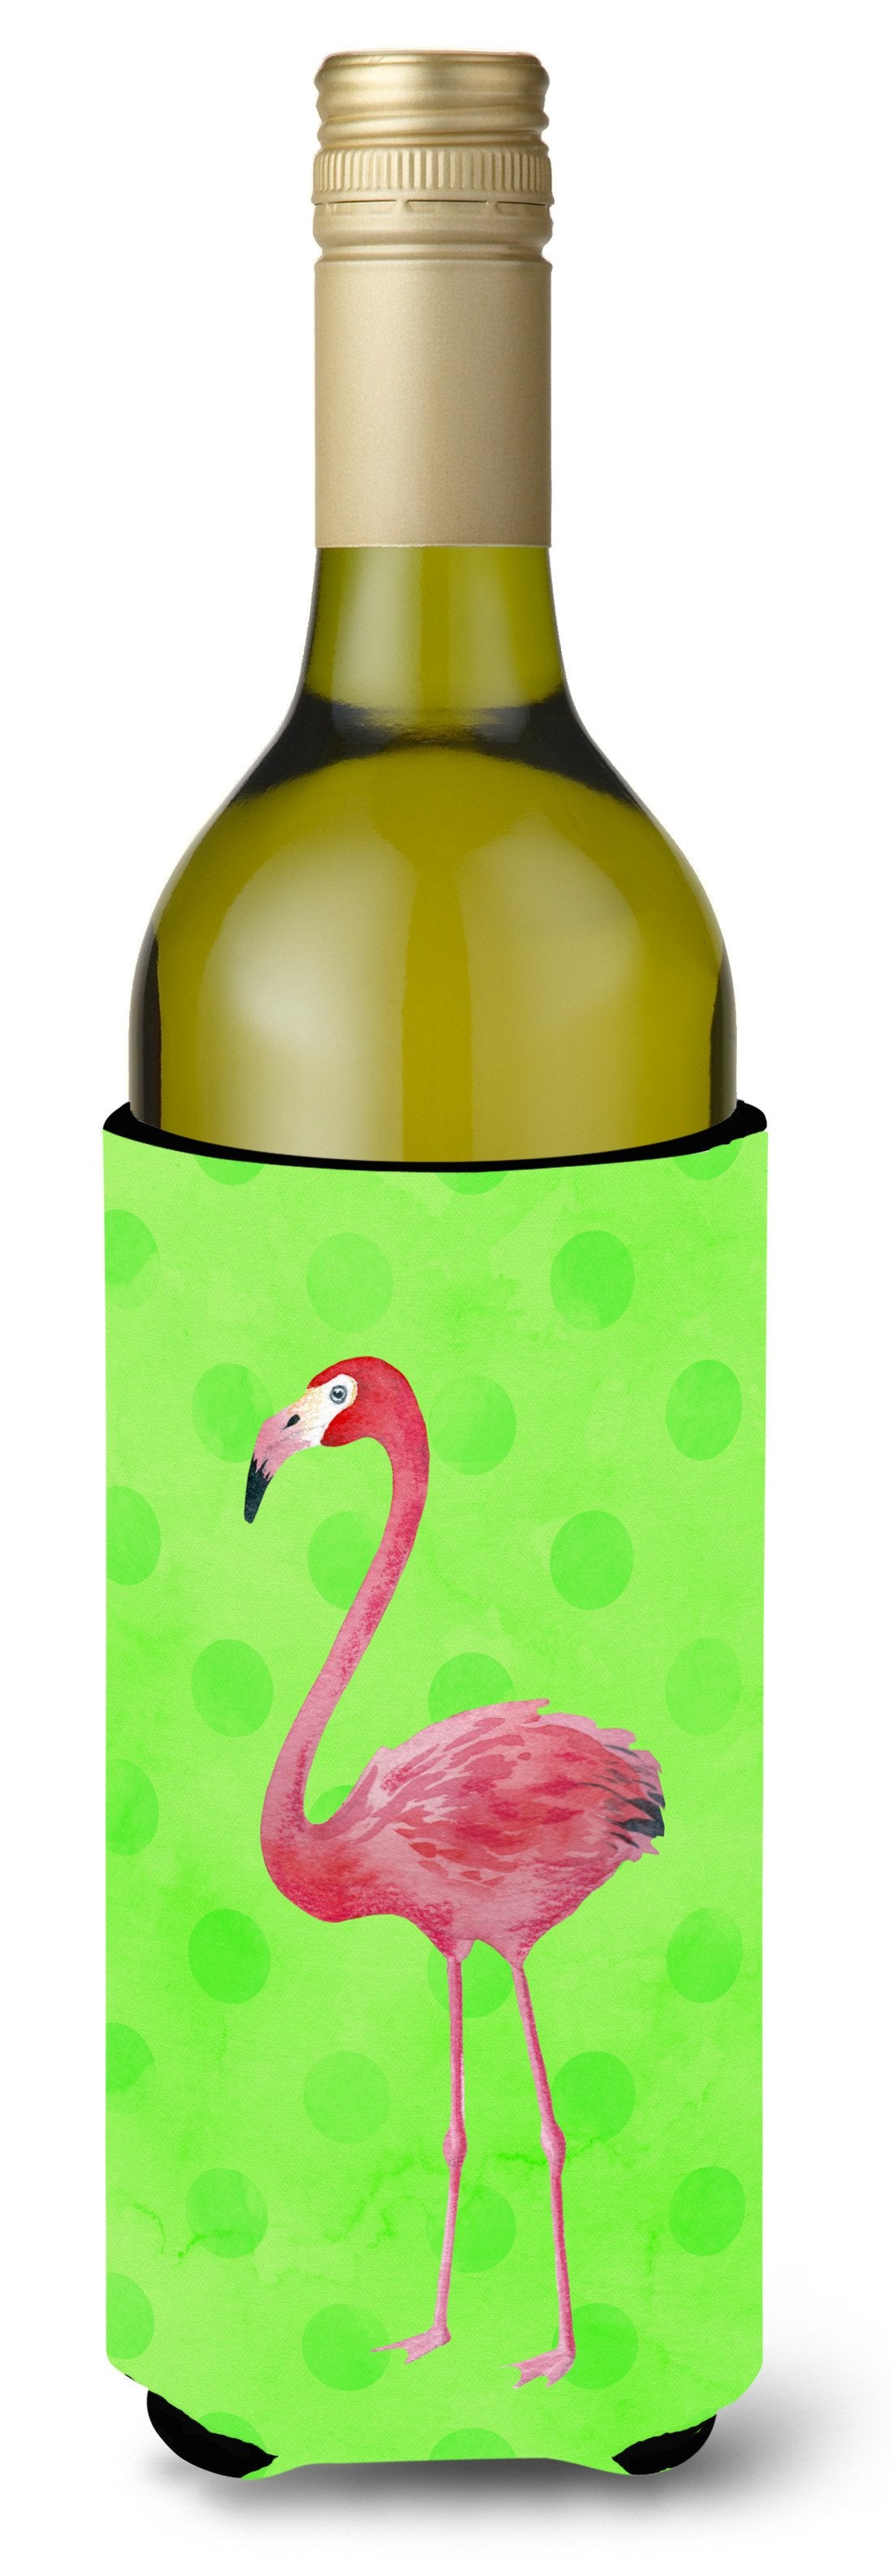 Flamingo Green Polkadot Wine Bottle Beverge Insulator Hugger BB8185LITERK by Caroline's Treasures